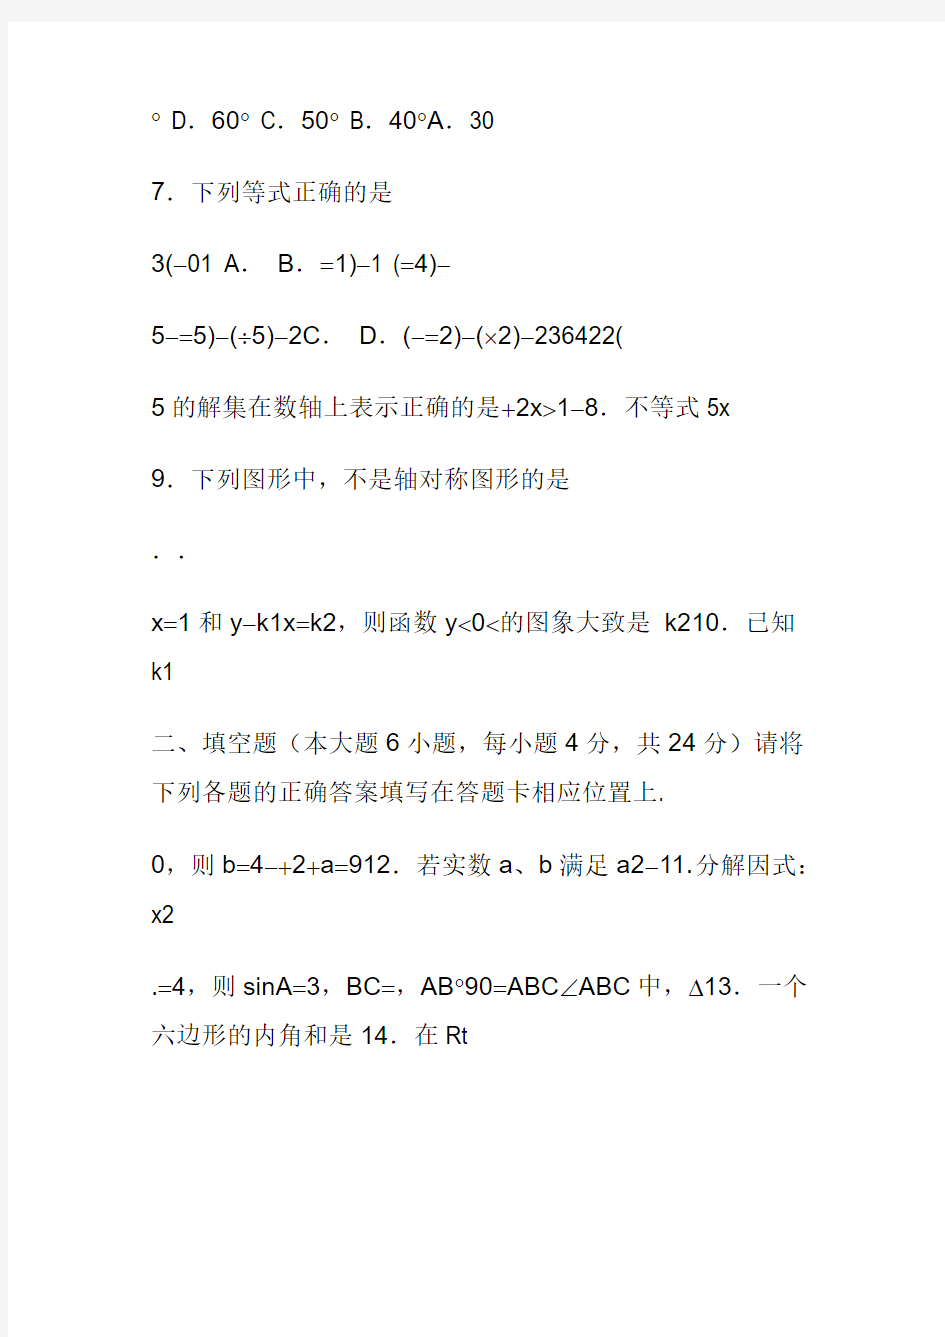 2013年广东省初中毕业生学业考试数学试卷及答案